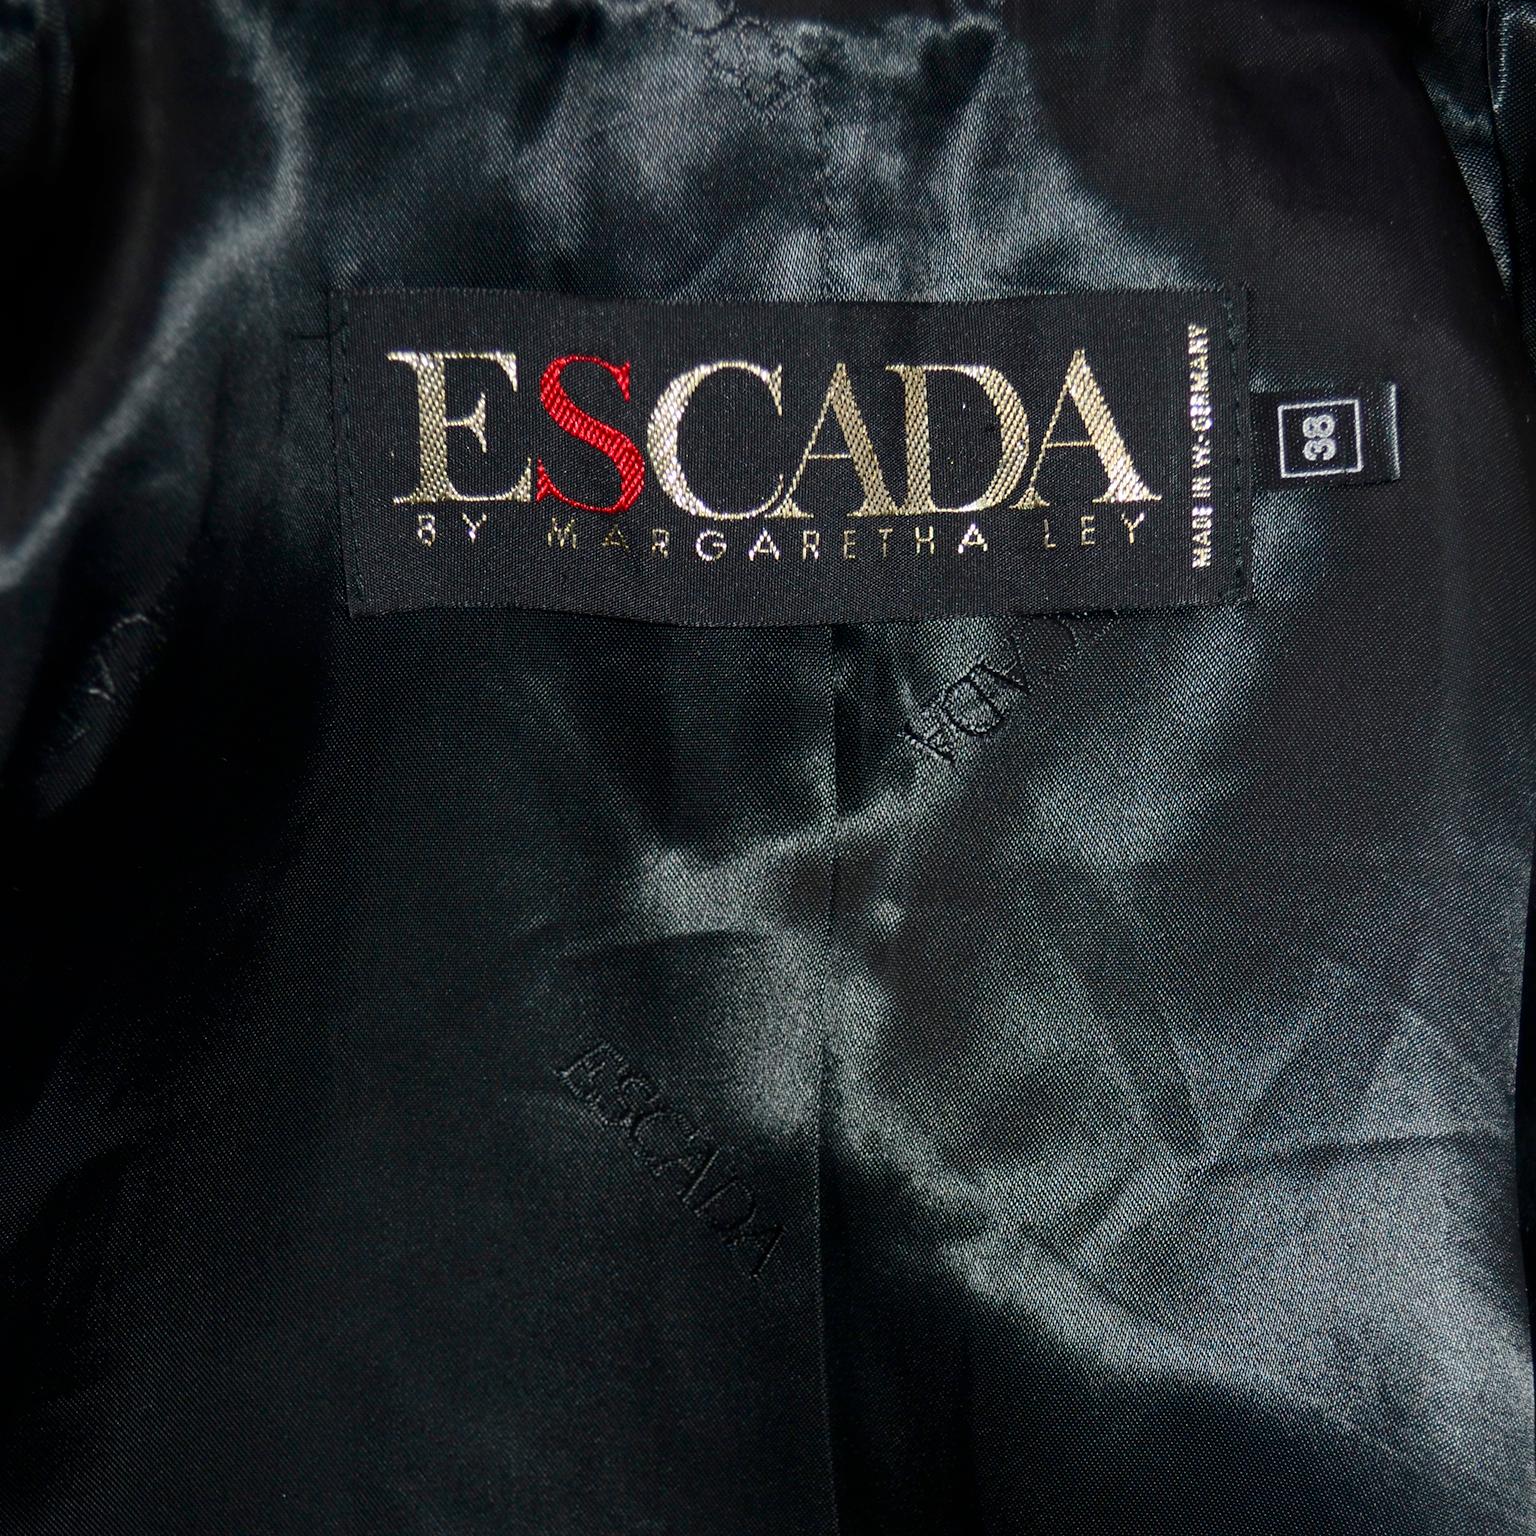 Escada Margaretha Ley Plaid Wool Blazer Longline Jacket in Gray & Brown Plaid For Sale 1